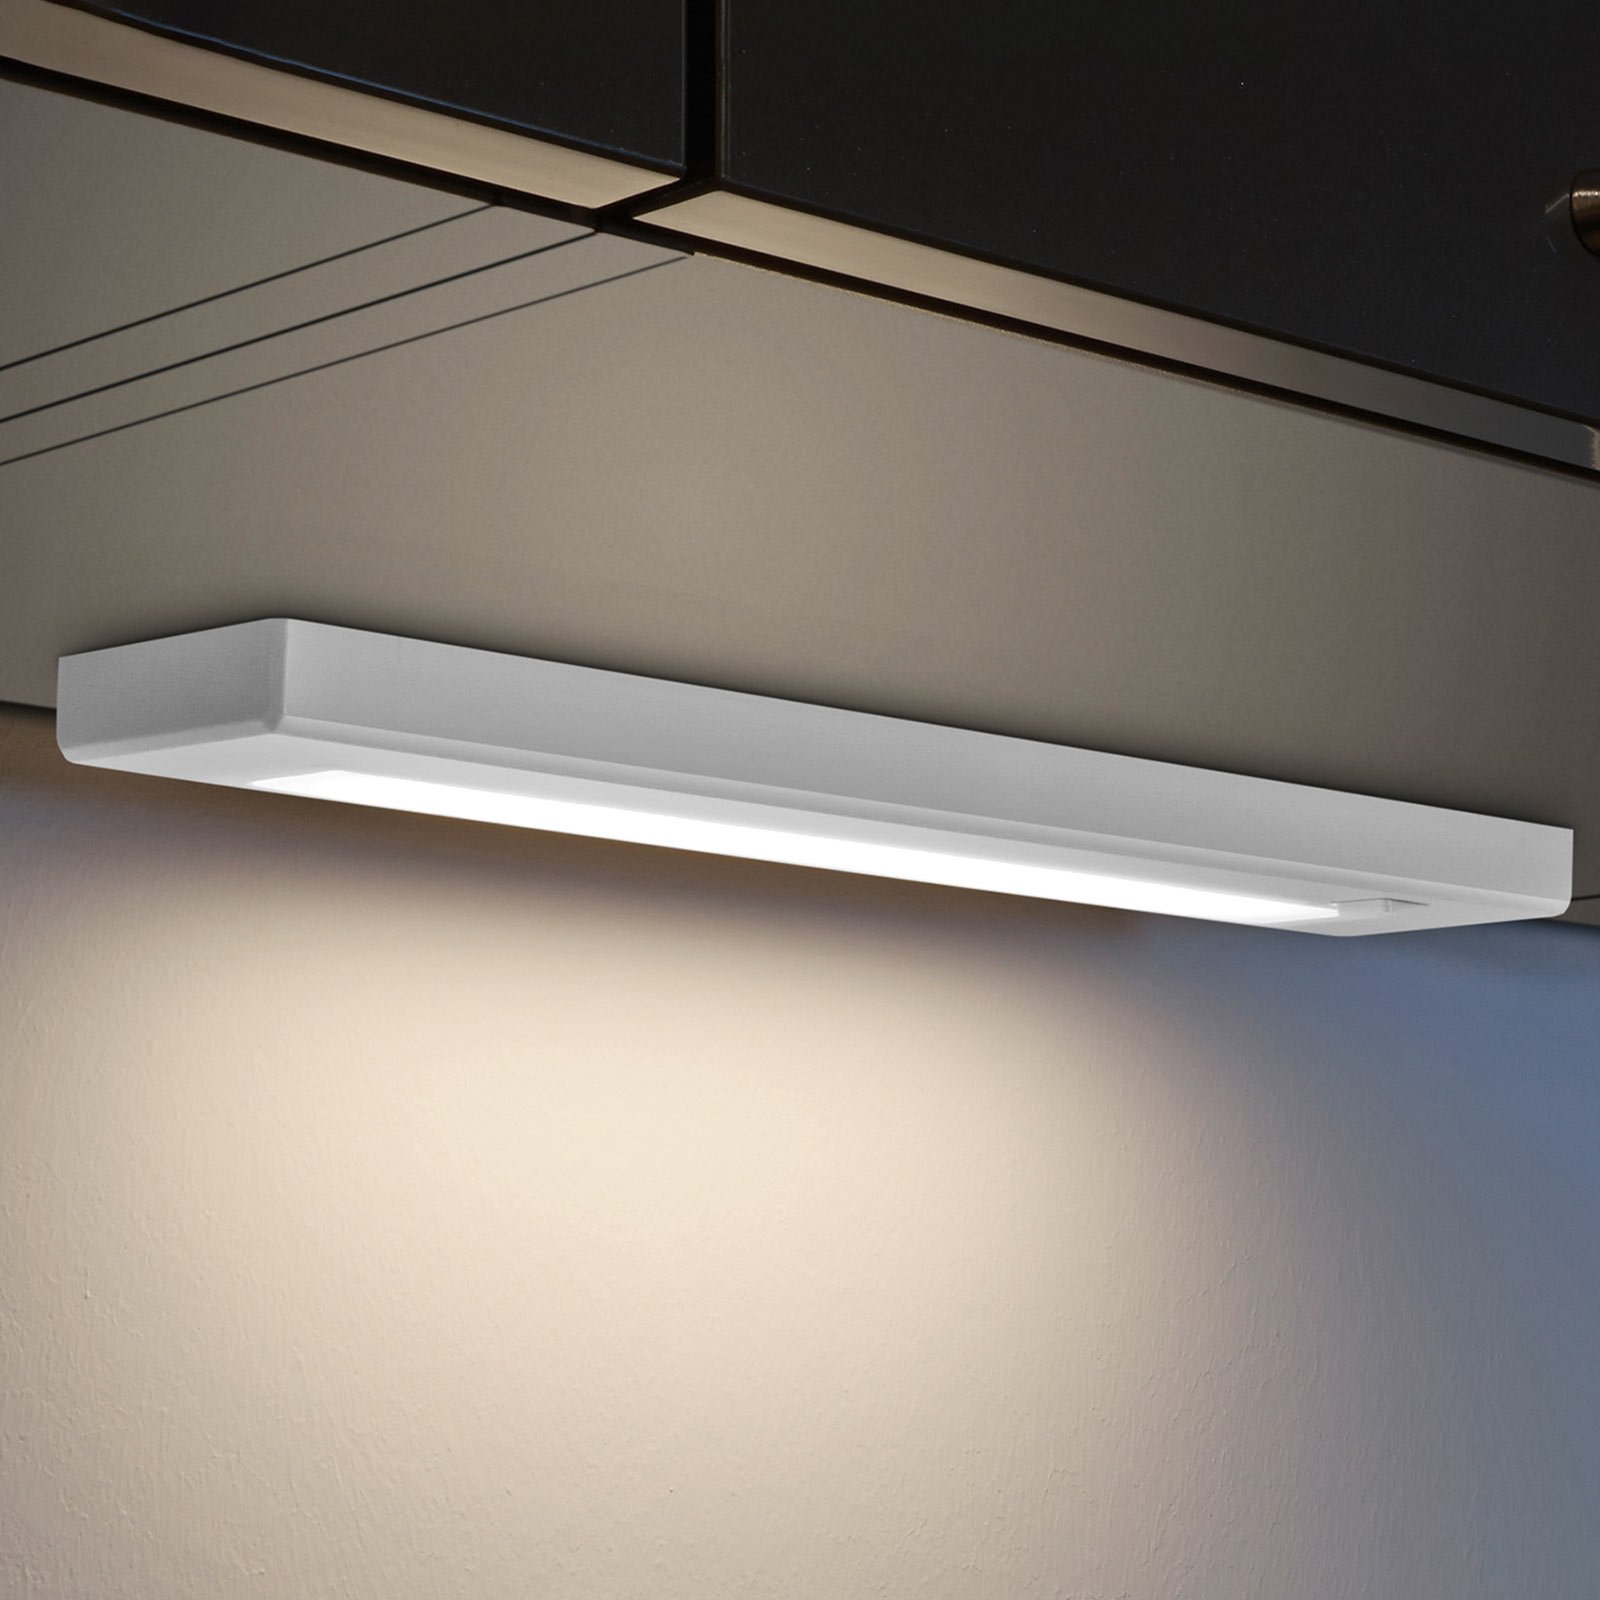 LED осветление за под шкаф Alino, бяло, дължина 34 cm